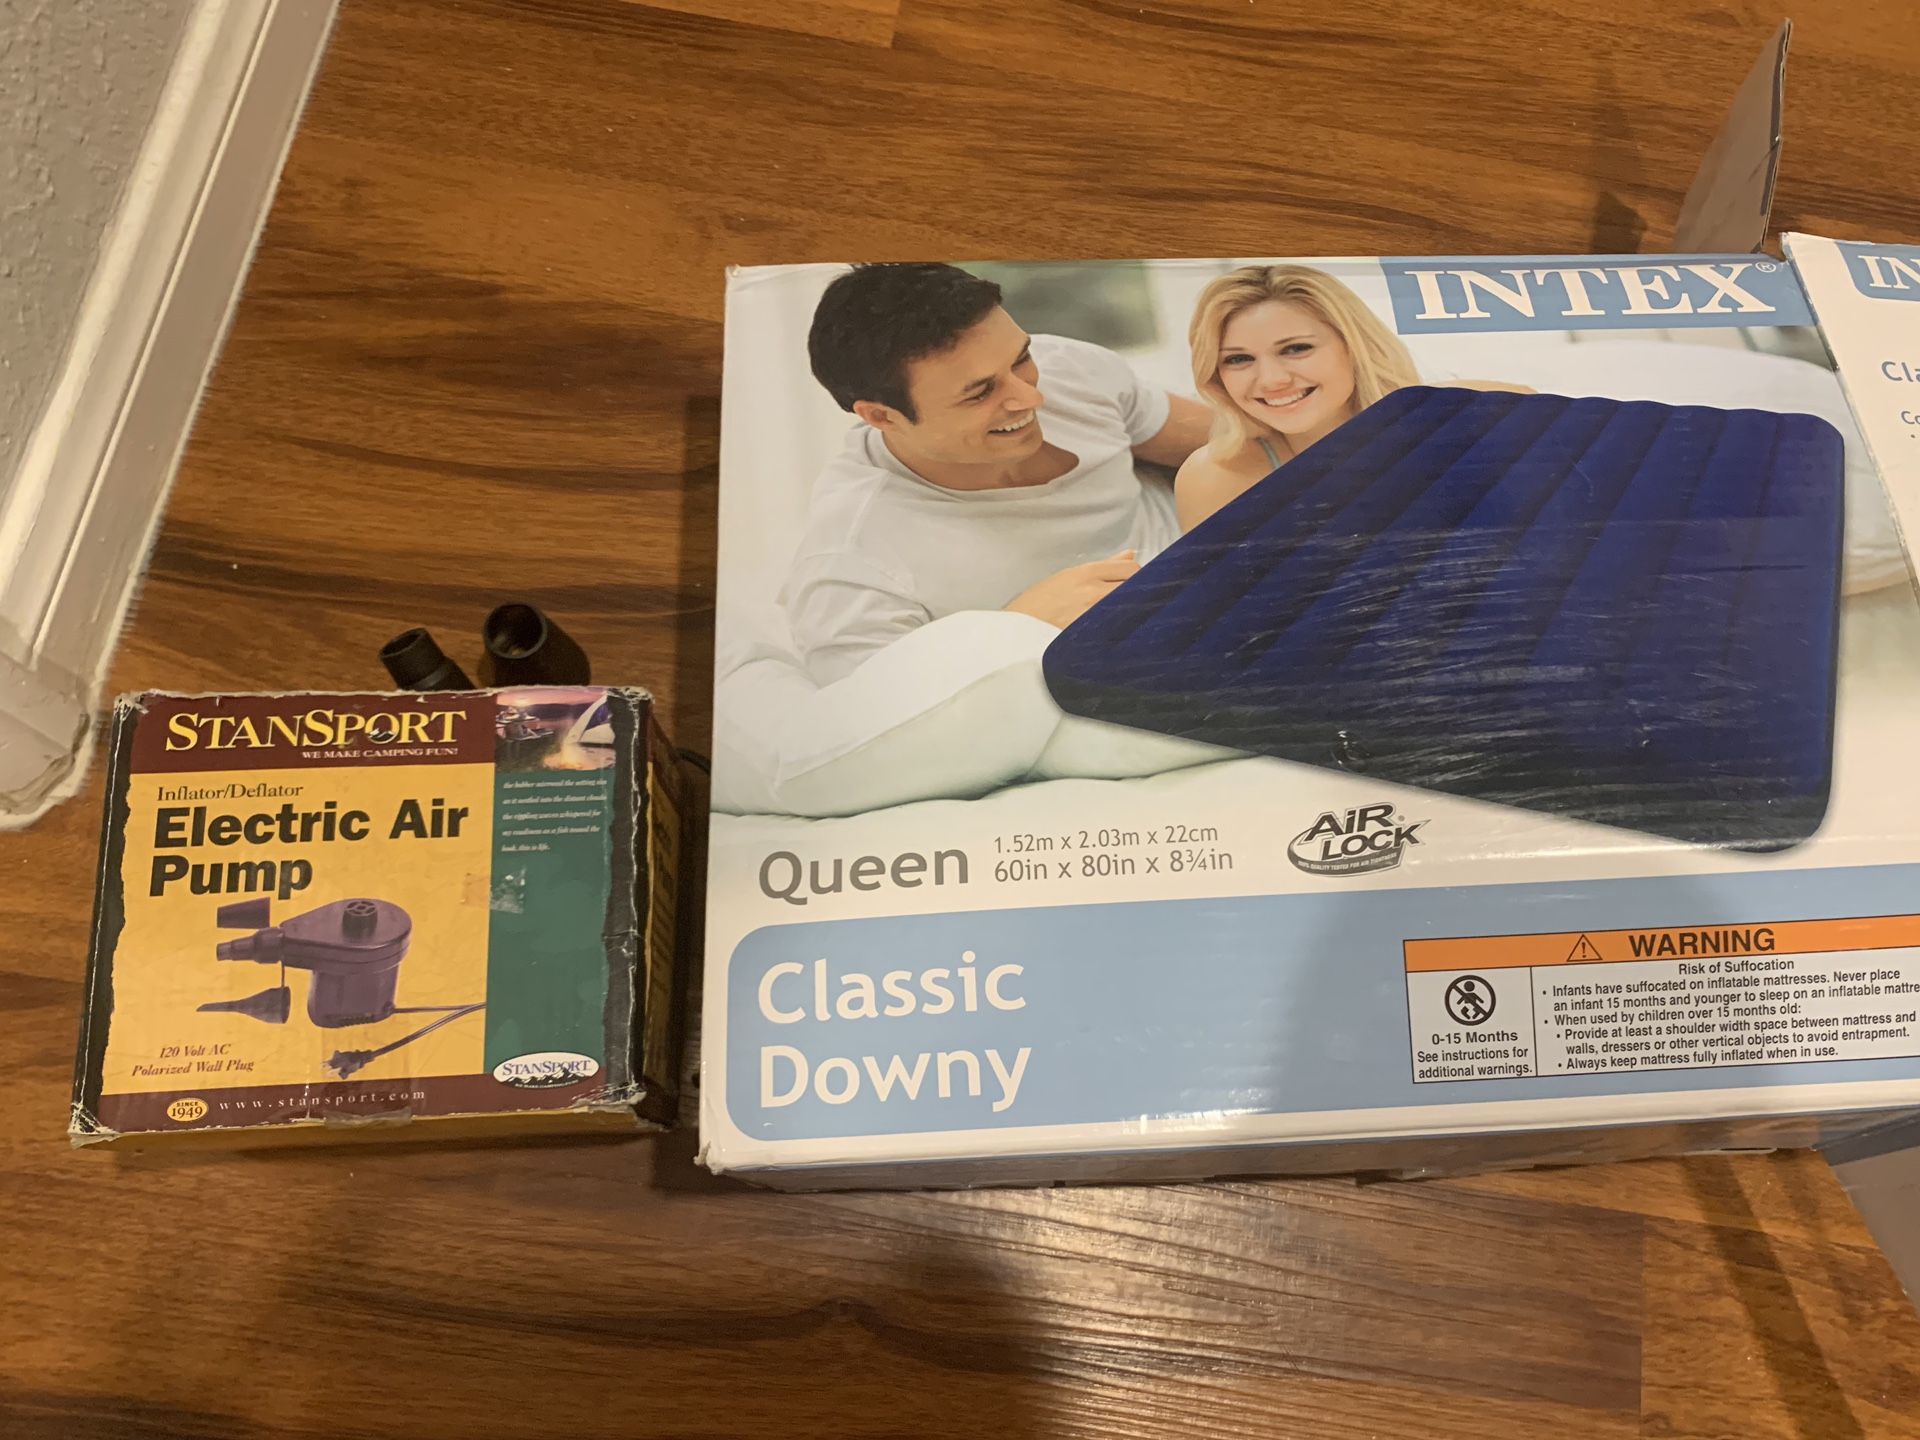 Intex queen air mattress and air pump